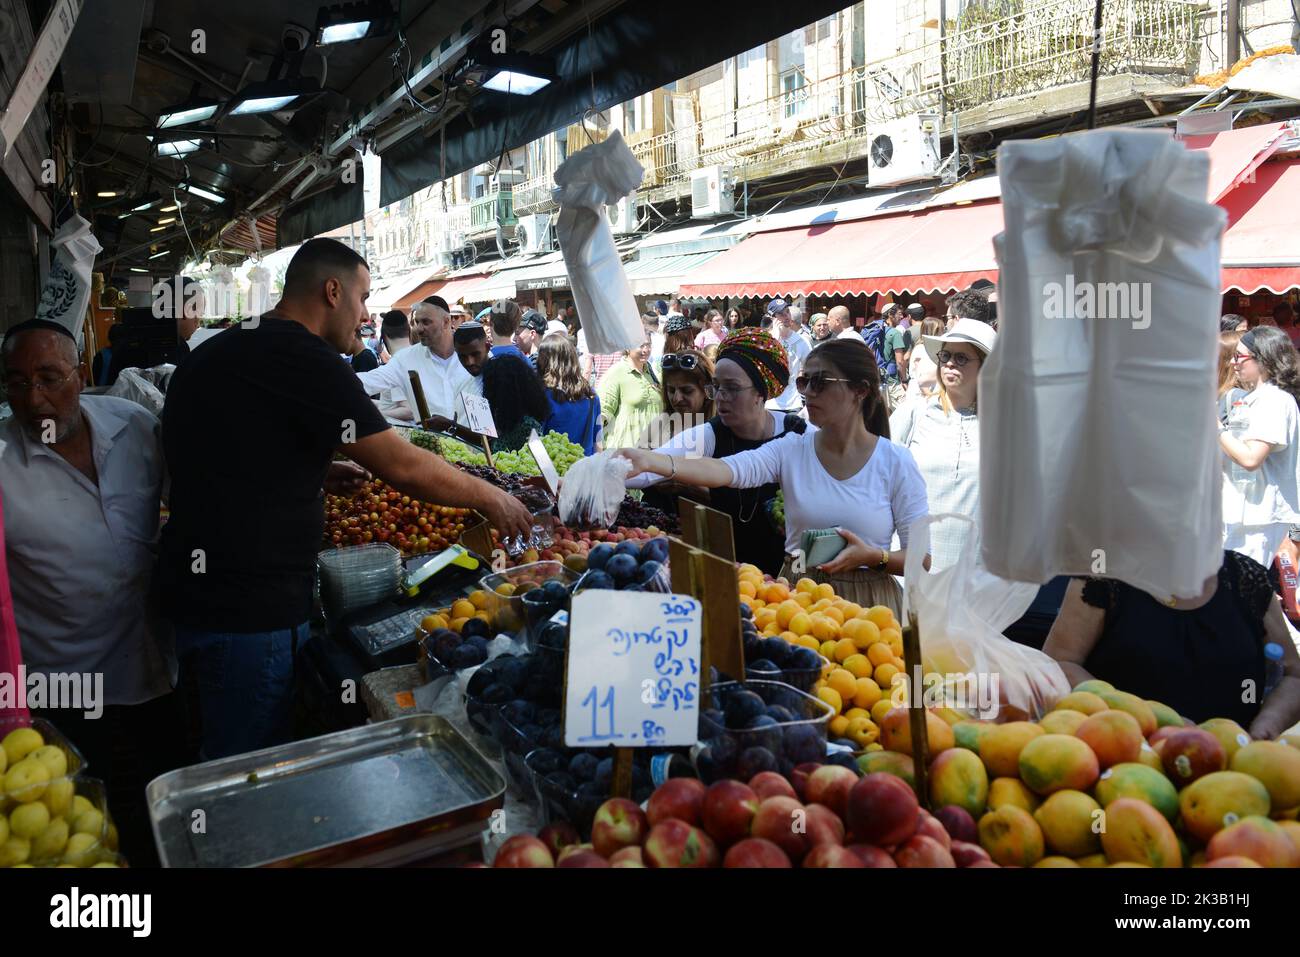 El vibrante mercado Mahane Yehuda en Jerusalén, Israel. Foto de stock